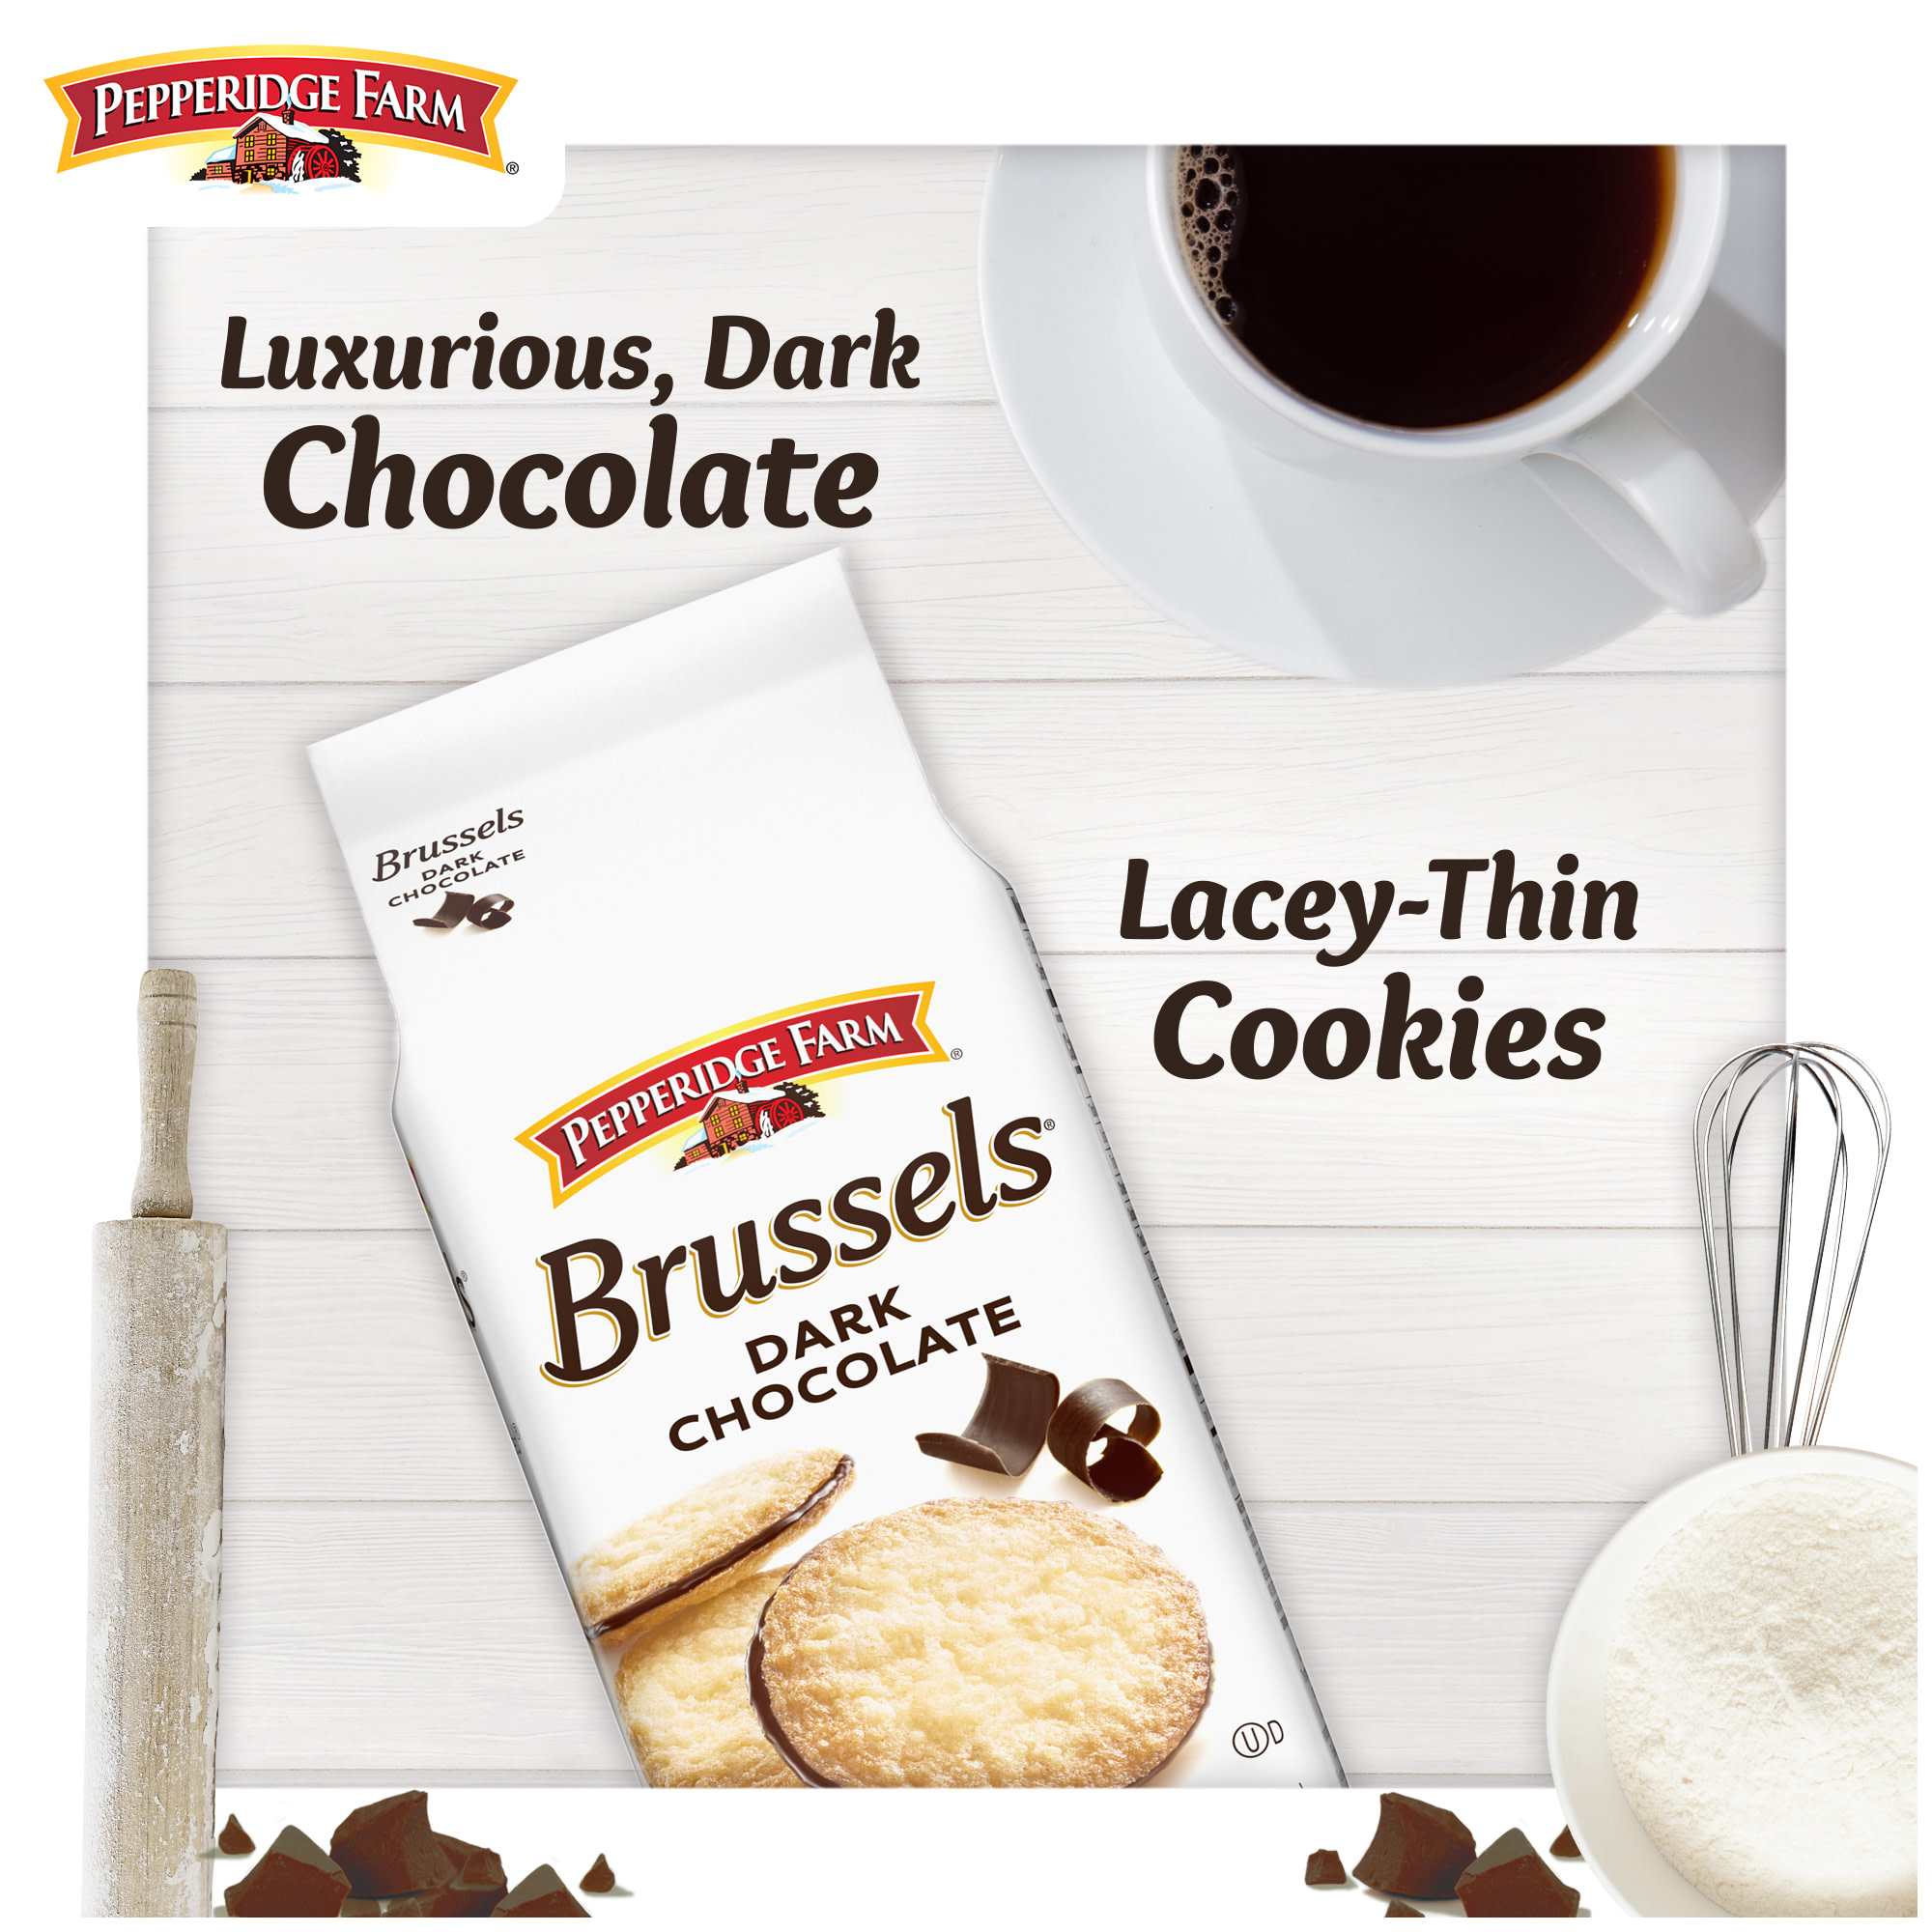 Pepperidge Farm Brussels Dark Chocolate, 15 Lace Cookies, 5.25 oz. Bag - image 2 of 9